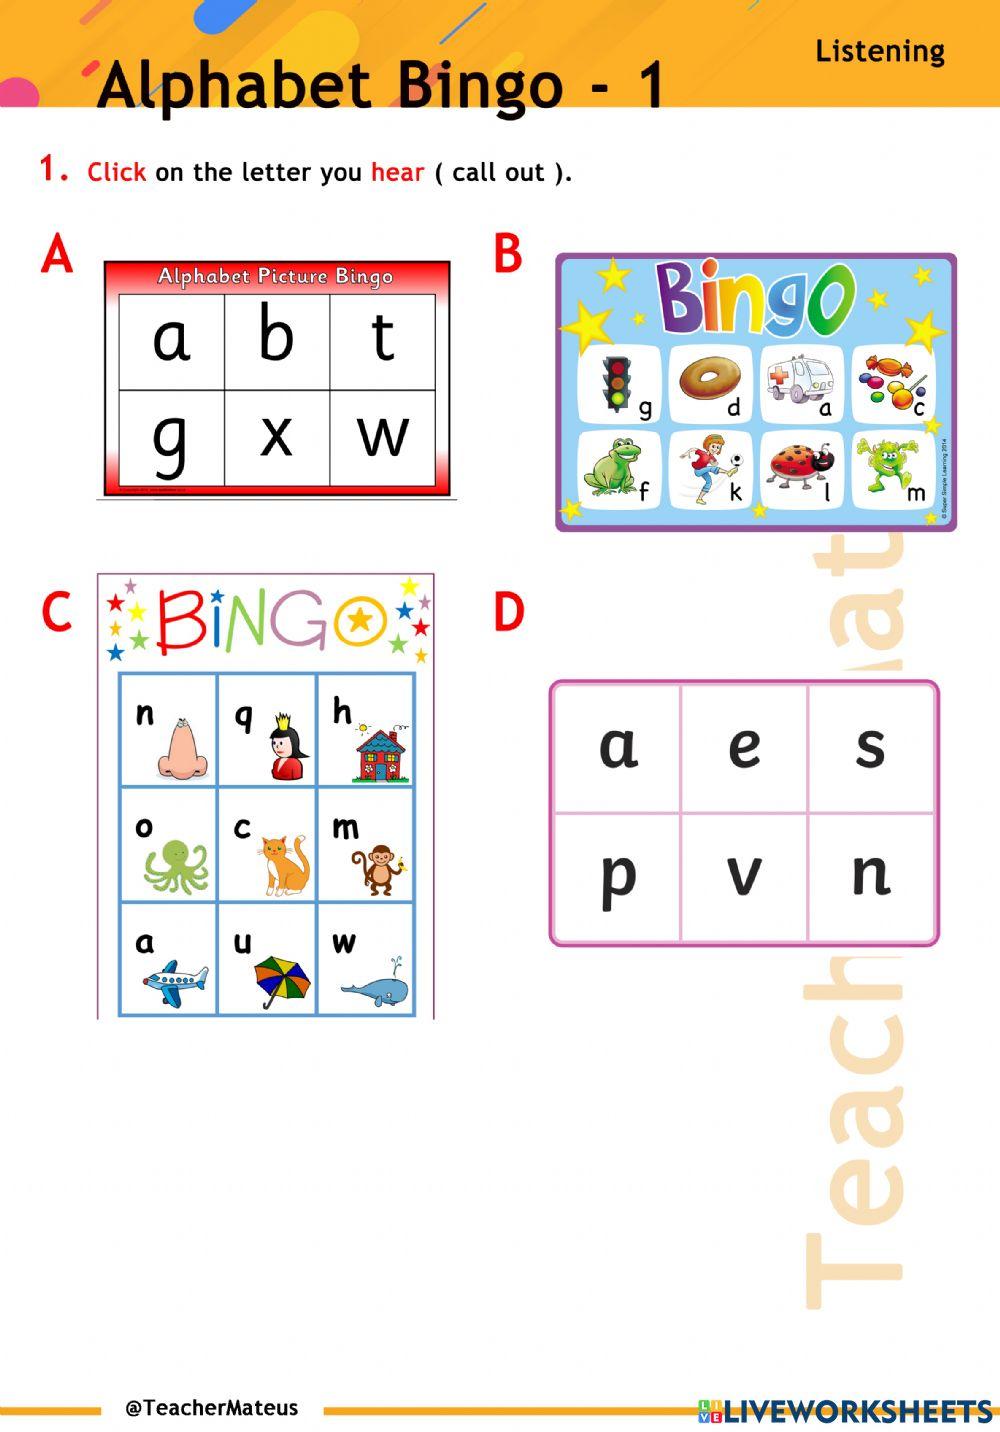 Alphabet Bingo - 1